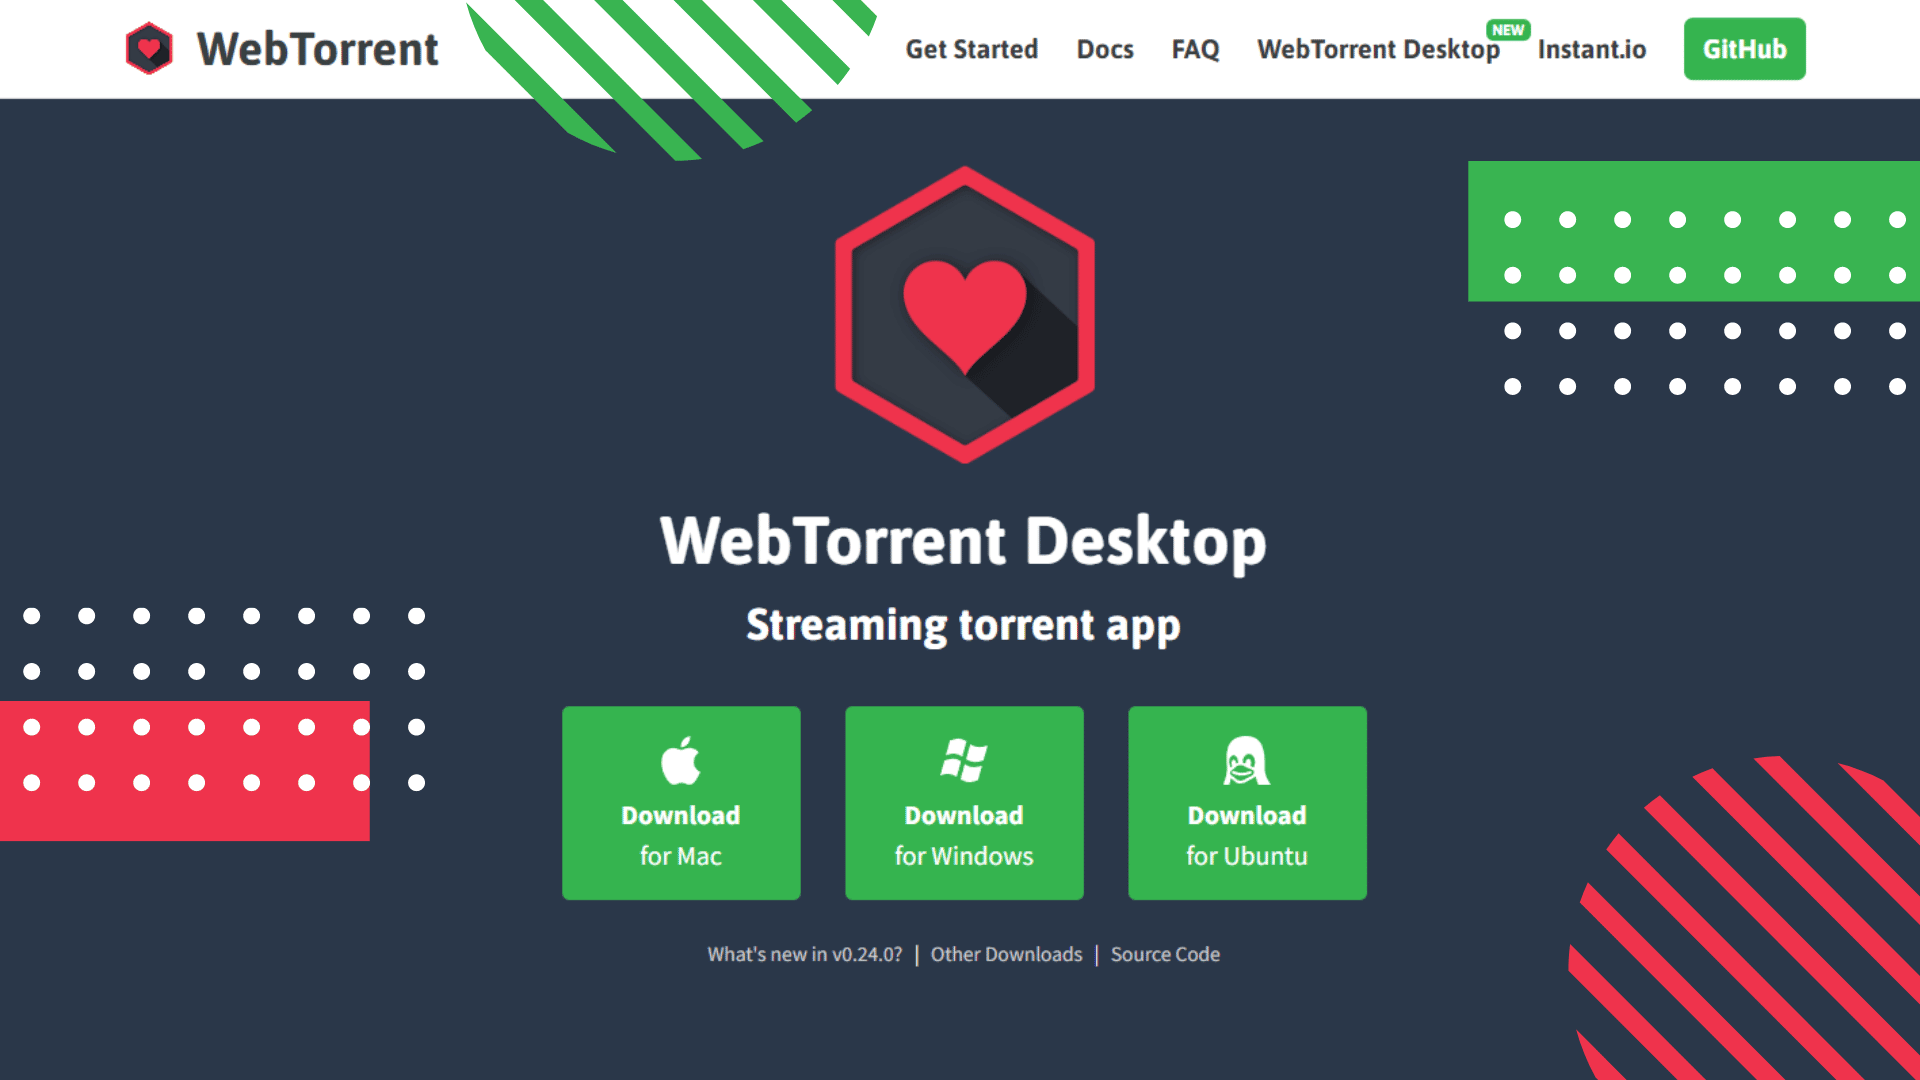 WebTorrent Desktop Features